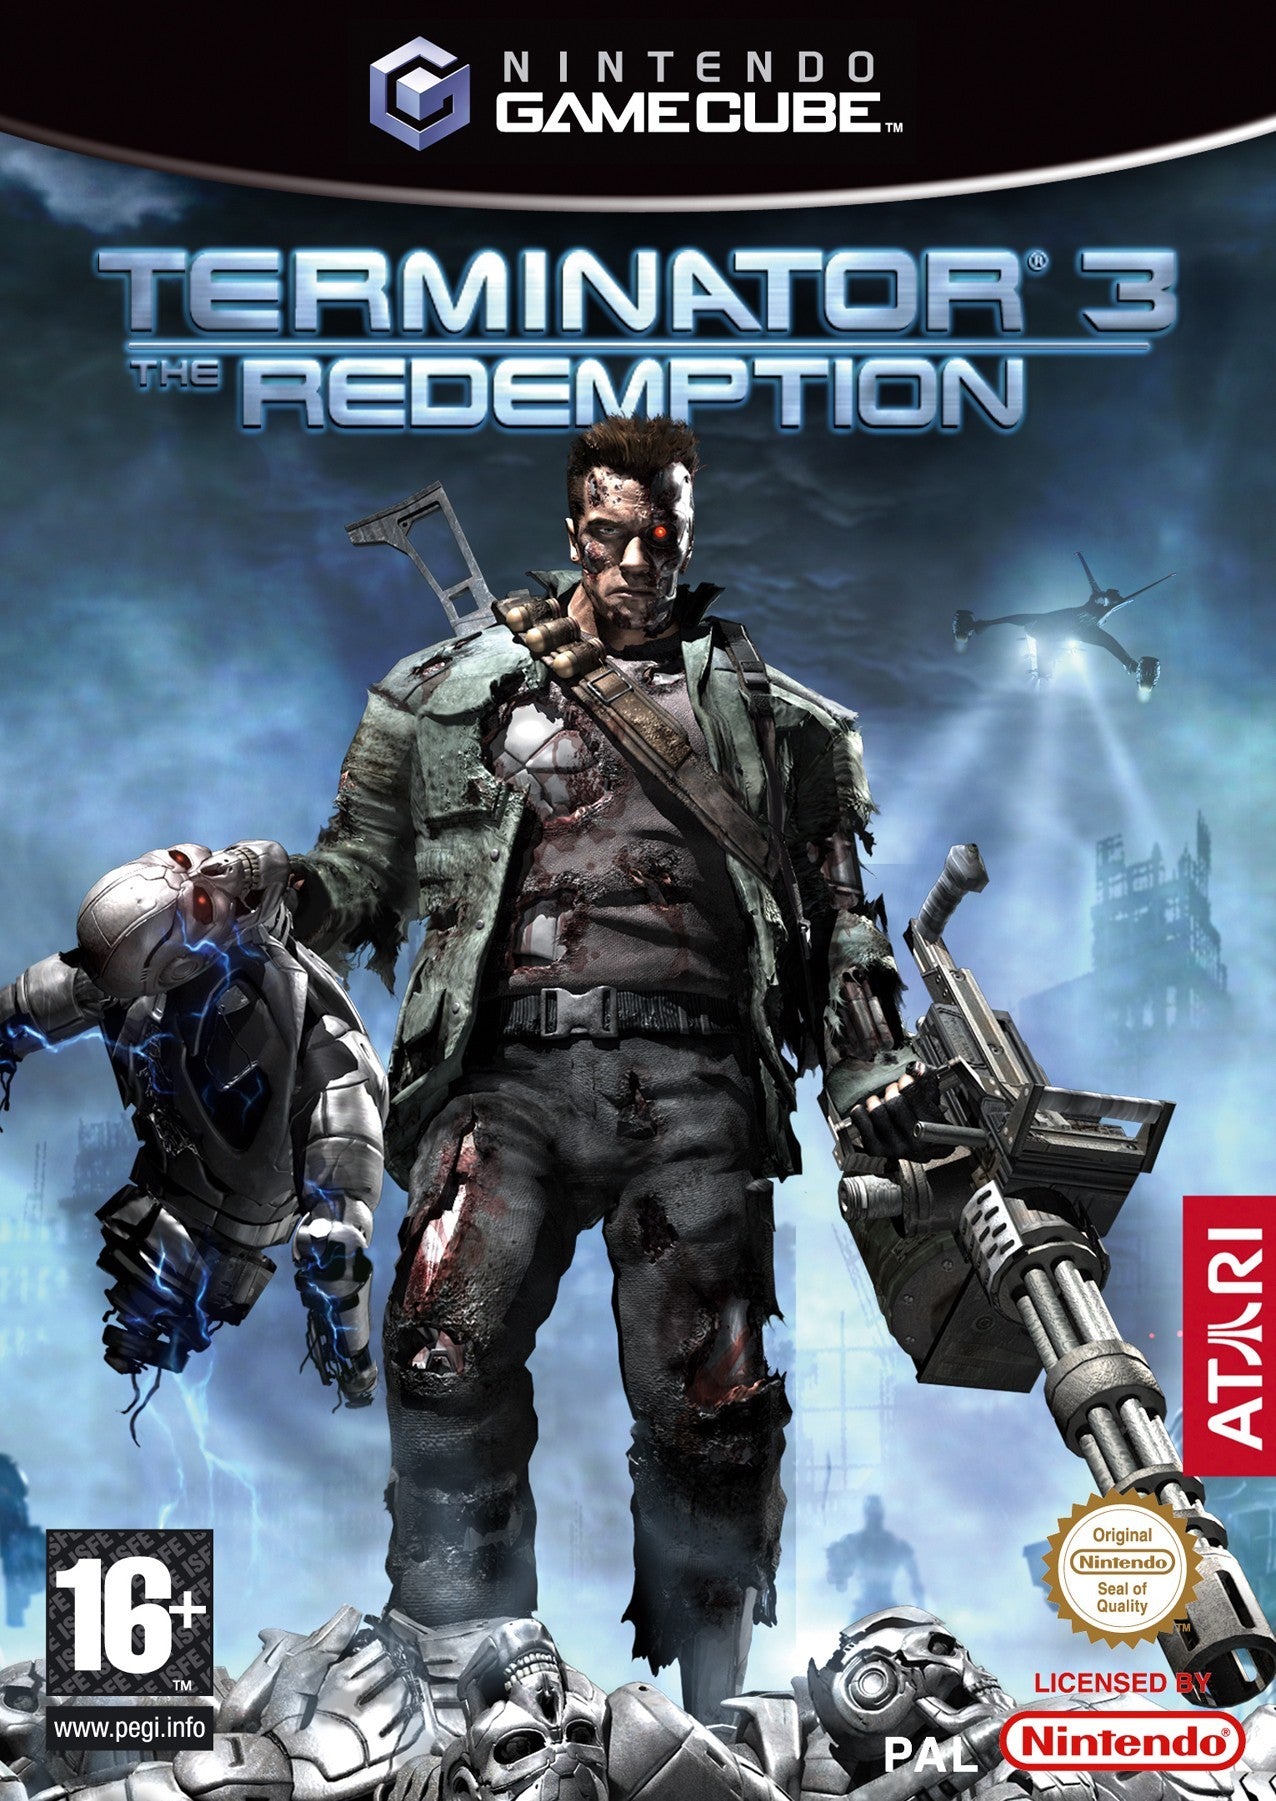 Game | Nintendo GameCube | Terminator 3 Redemption